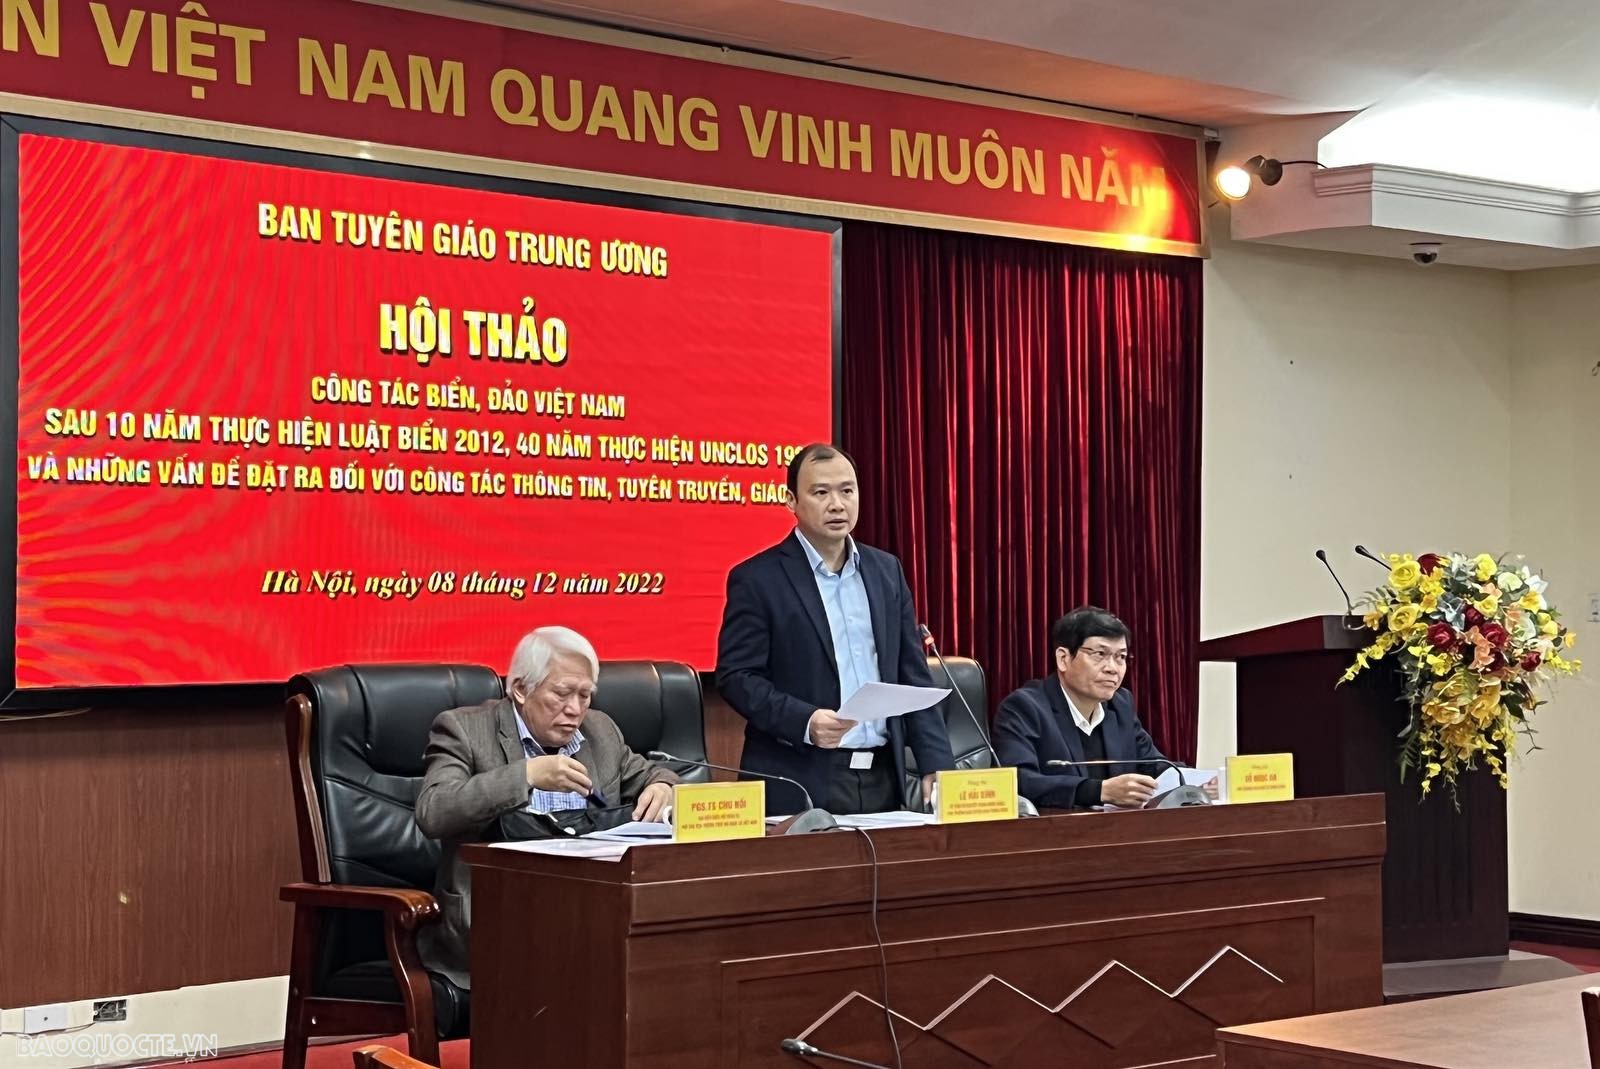 Ông Lê Hải Bình, Ủy viên dự khuyết Trung ương Đảng, Phó Trưởng ban Tuyên giáo Trung ương, phát biểu tại Hội thảo. (Ảnh: Thu Trang)